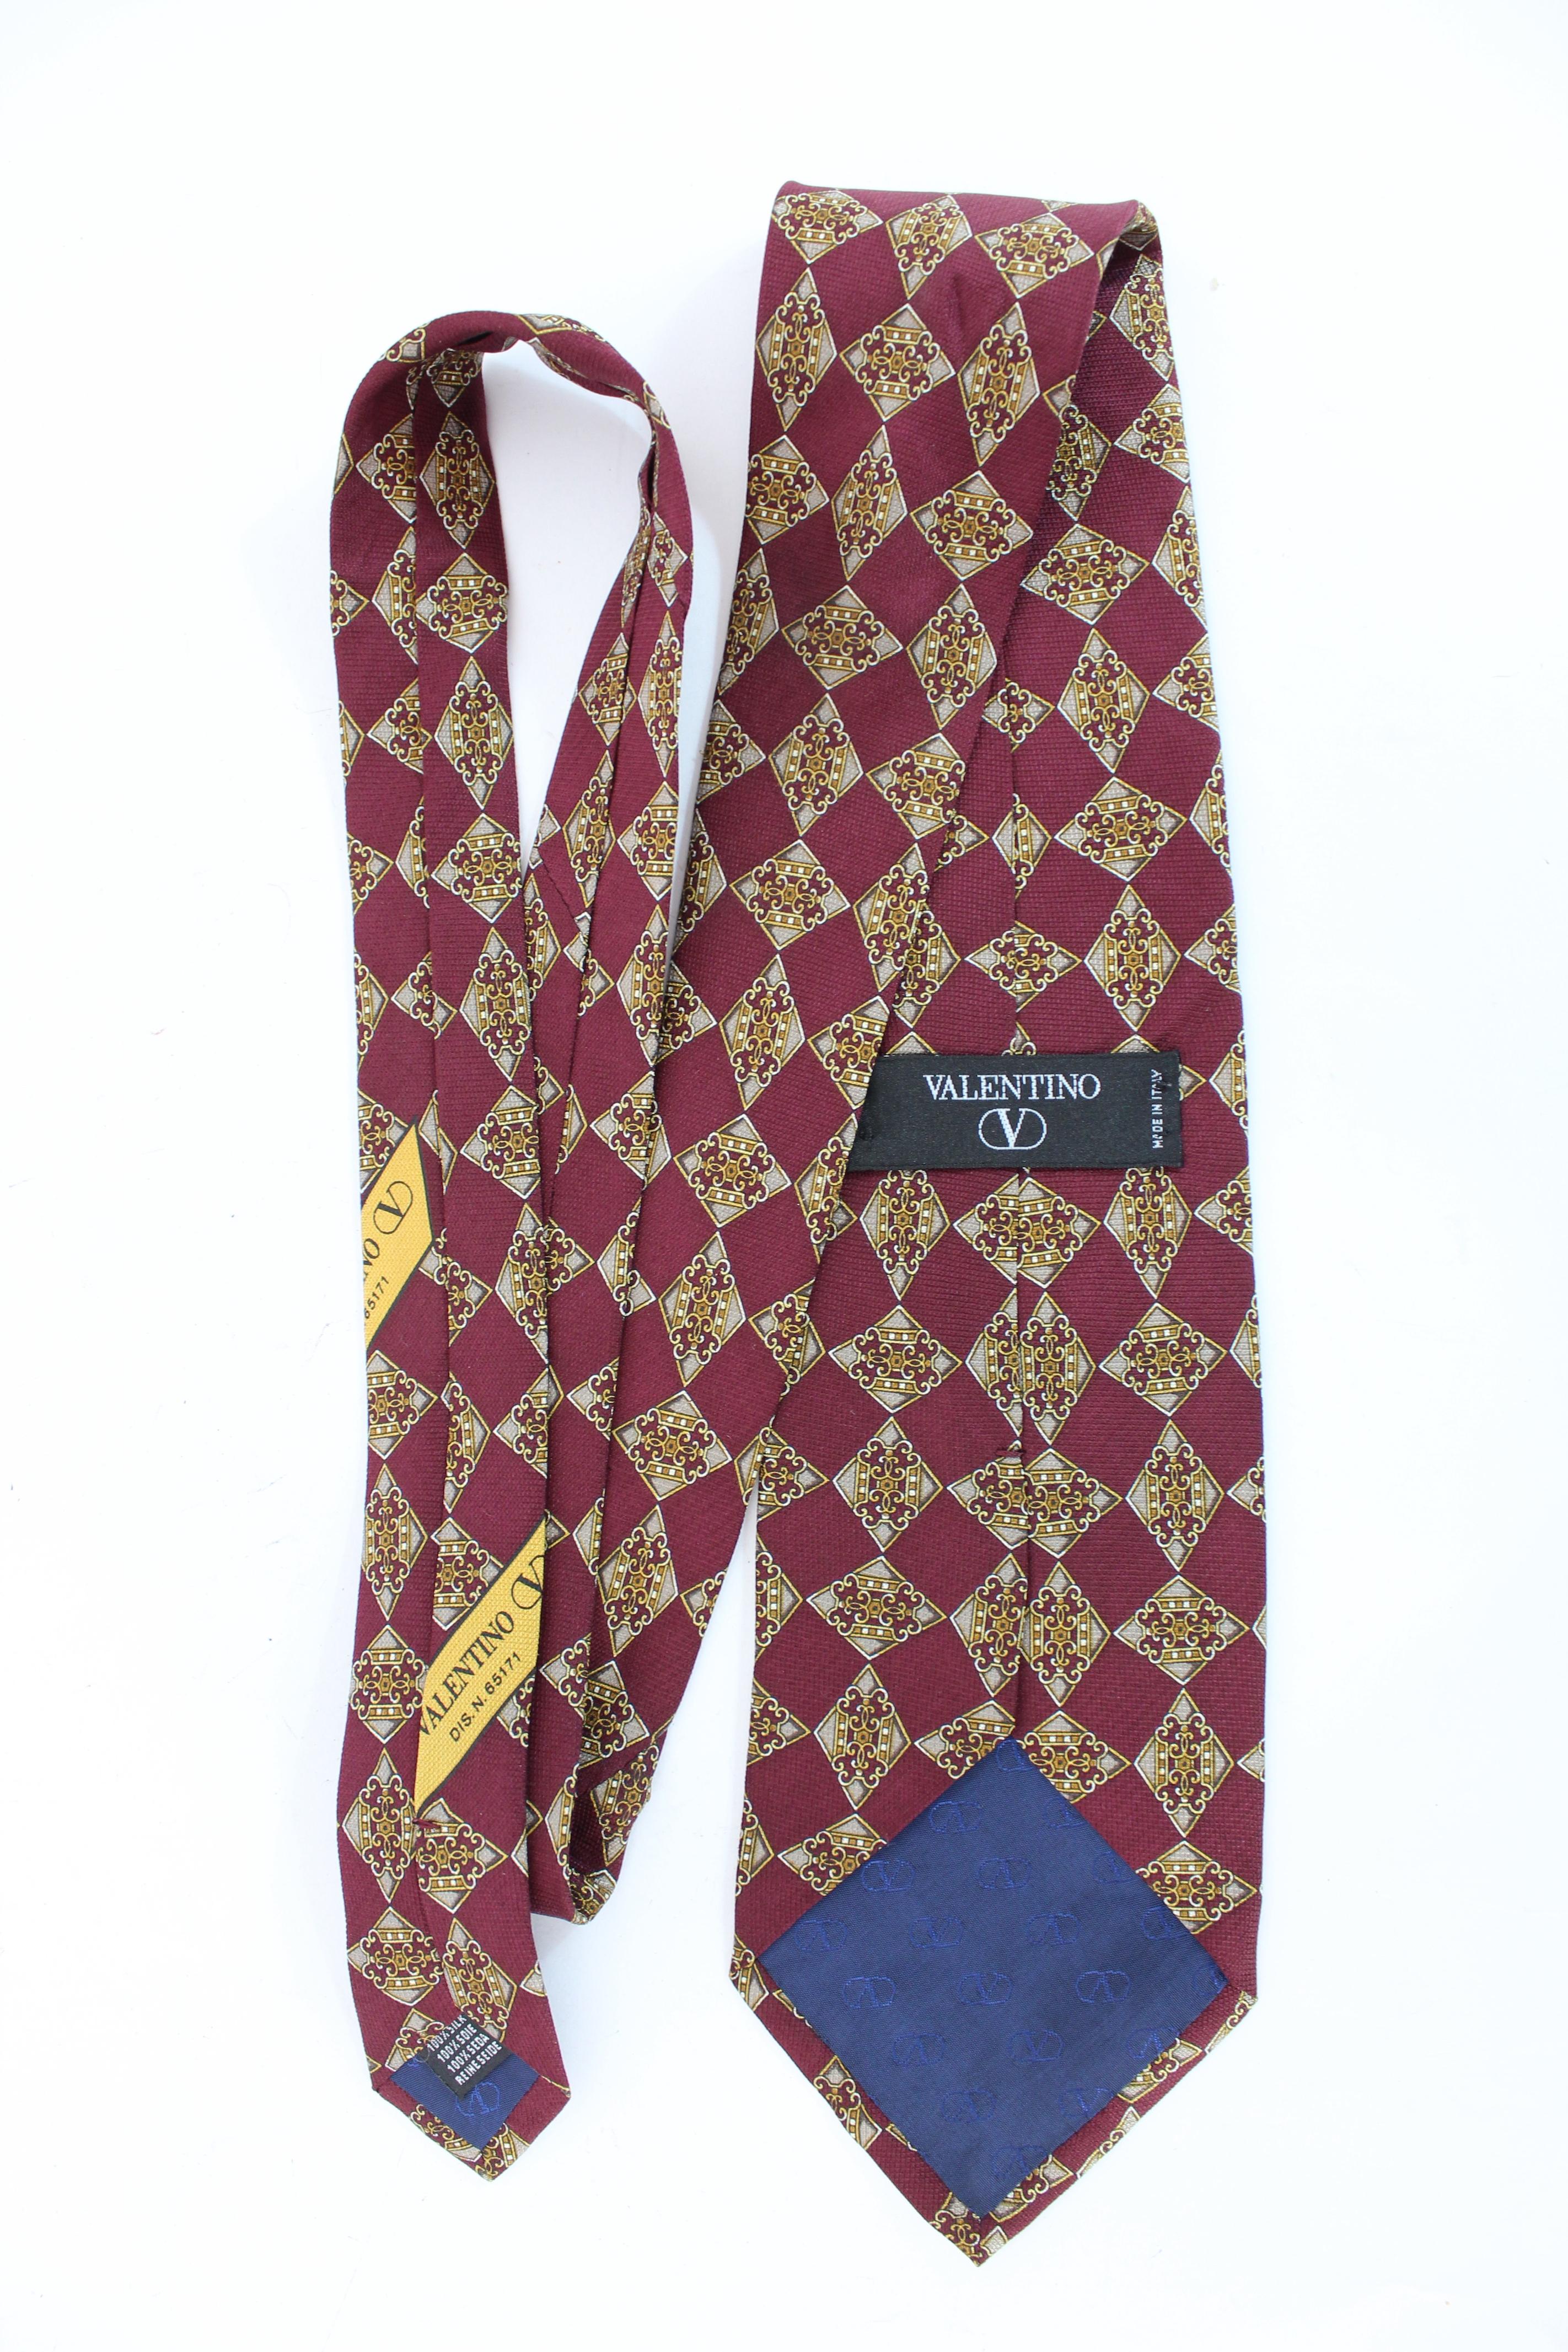 Valentino 90er Jahre Vintage-Krawatte. Klassische Krawatte, burgunderrot und goldfarben mit Rautenmuster. 100% Seidenstoff. Hergestellt in Italien.

Zustand: Ausgezeichnet

Artikel verwendet wenige Male, es bleibt in seinem ausgezeichneten Zustand.